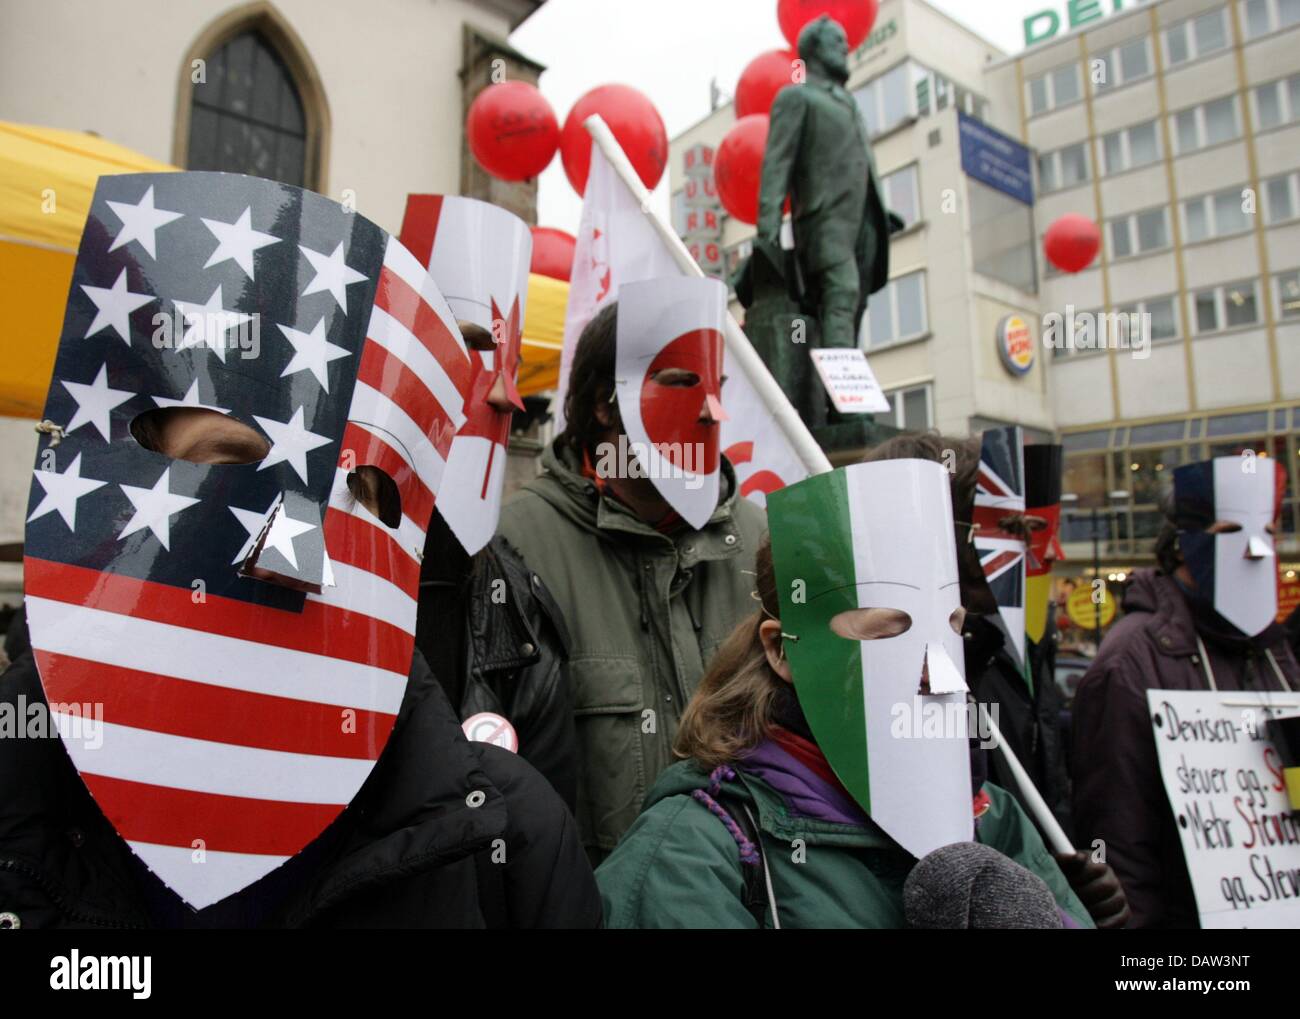 Masken in den Nationalfarben der G7-Länder Demonstranten protestieren gegen das Treffen der G7-Finanzminister und-Notenbankgouverneure in Essen, Deutschland, Samstag, 10. Februar 2007. Foto: Federico Gambarini Stockfoto